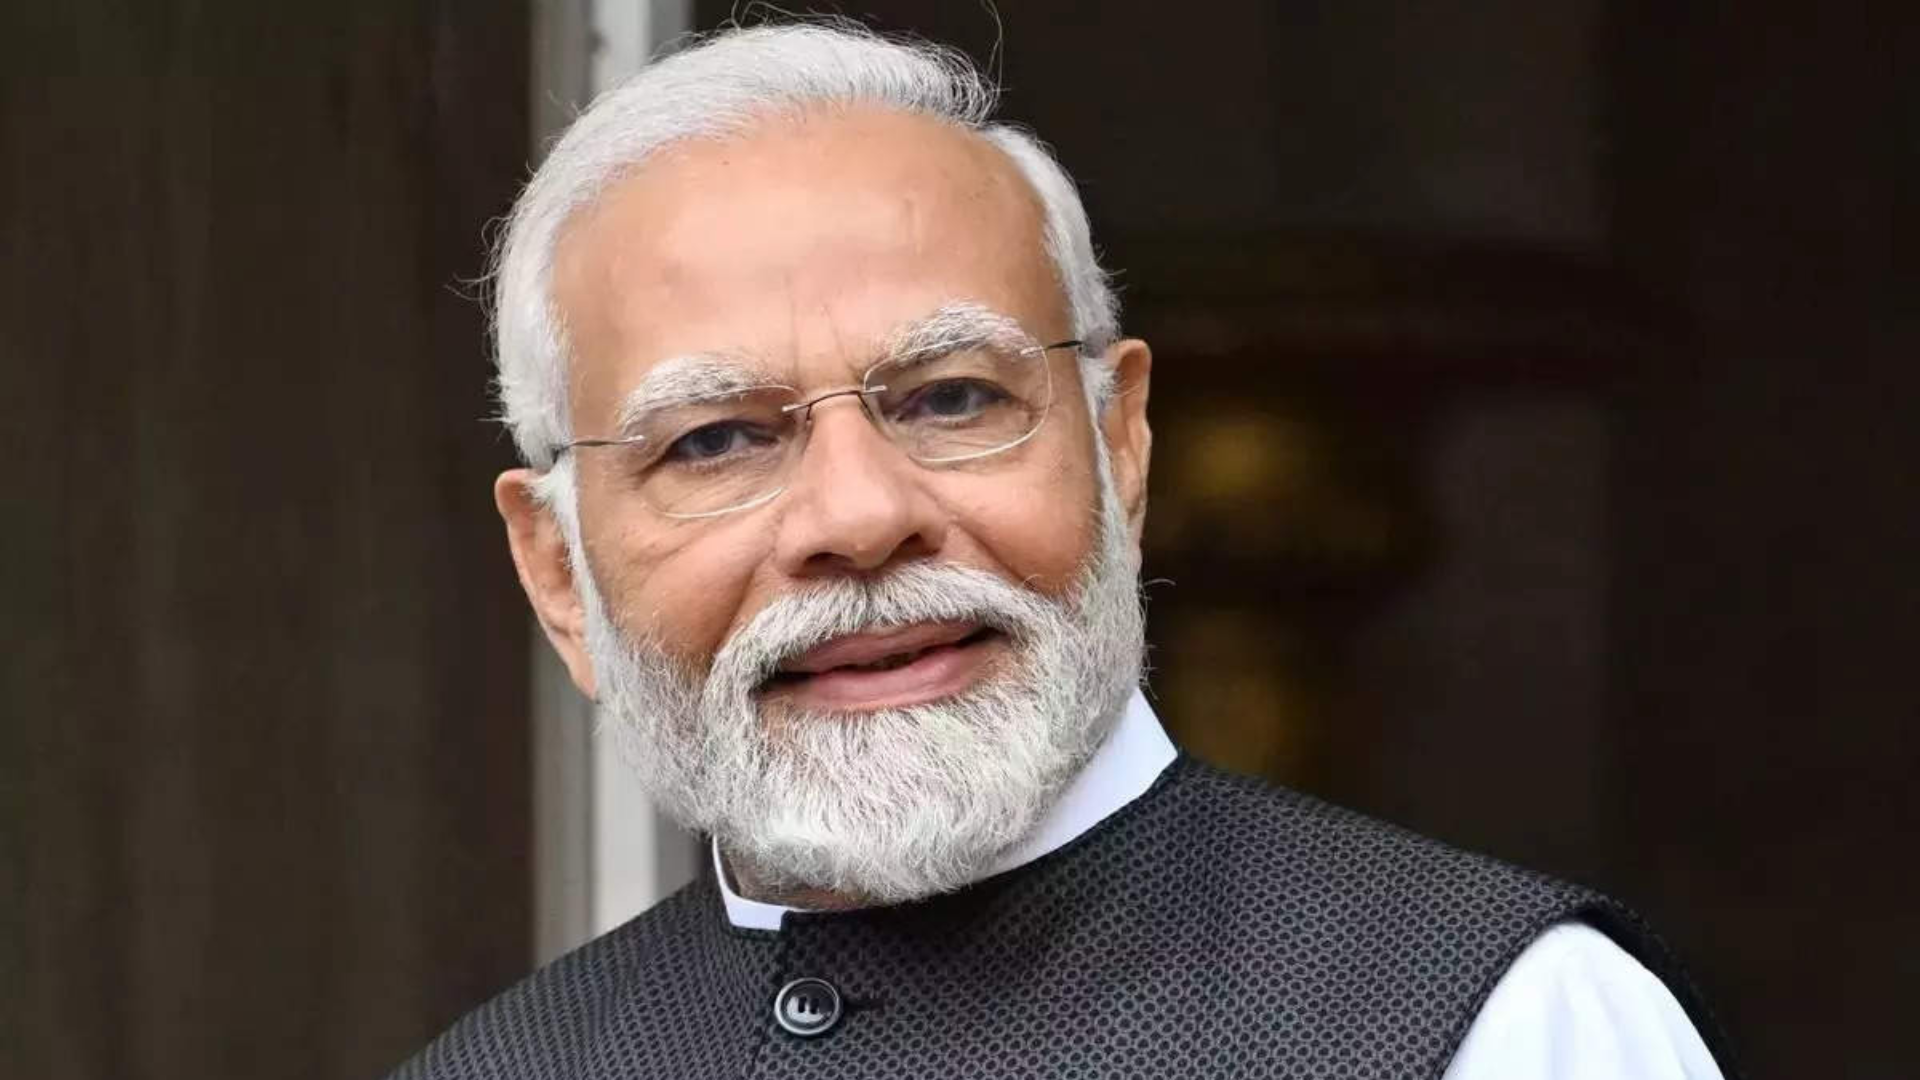 PM Modi states the four pillars of the ‘Viksit Bharat’ programme